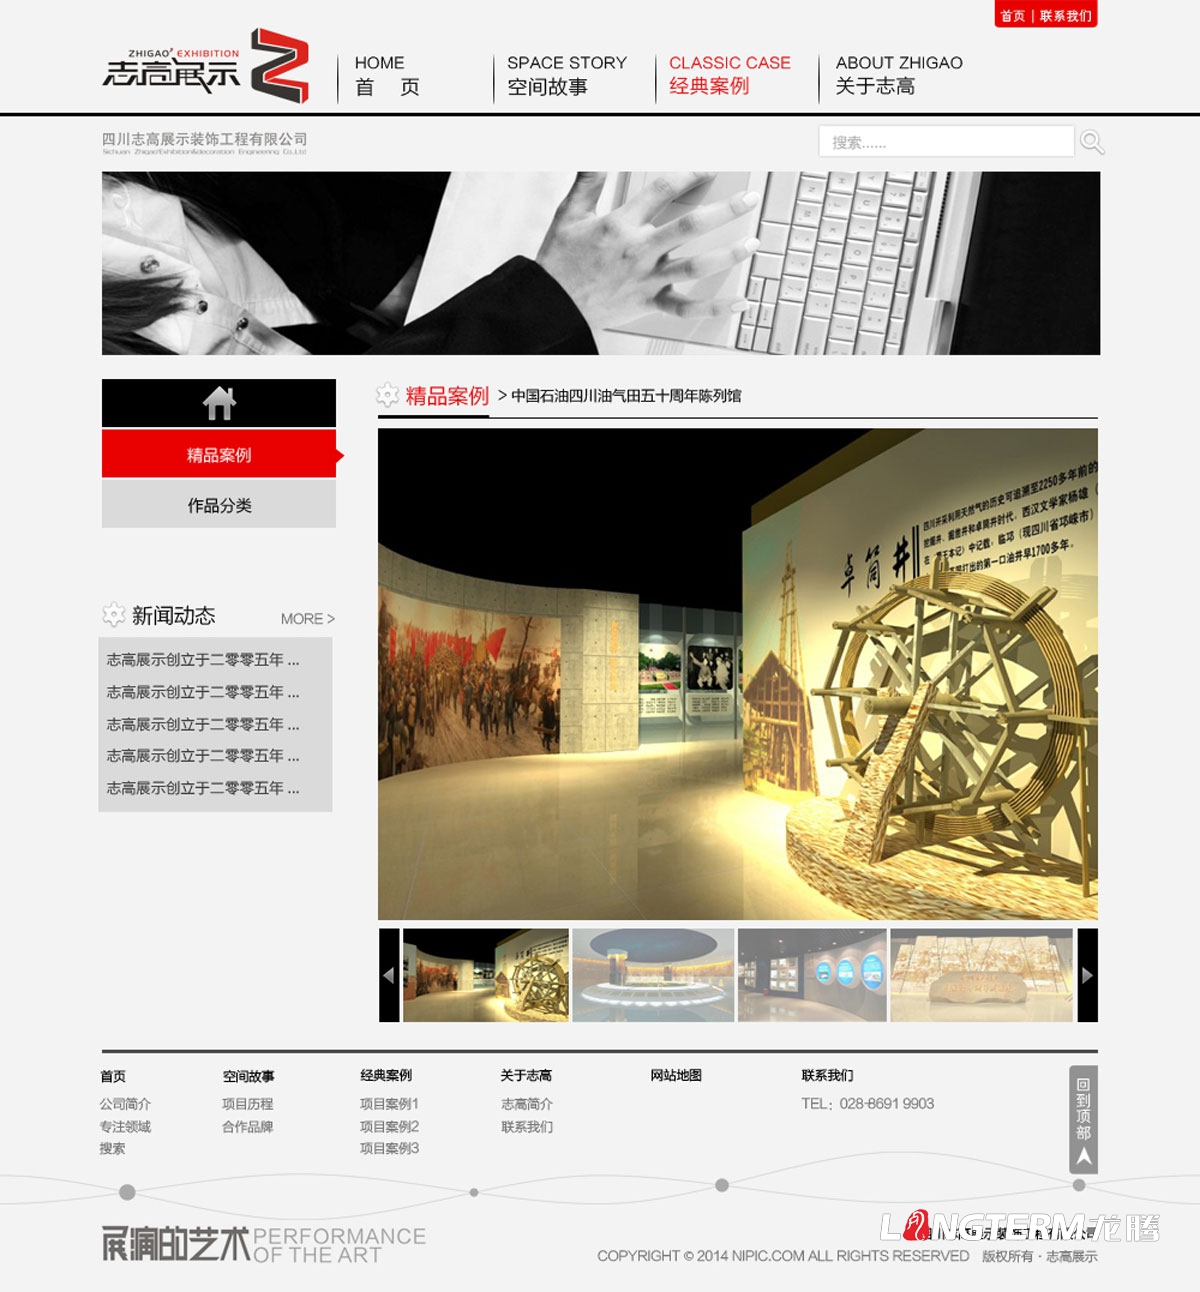 四川志高展示公司官网设计|工程展厅展示展览公司企业形象官网设计制作建设